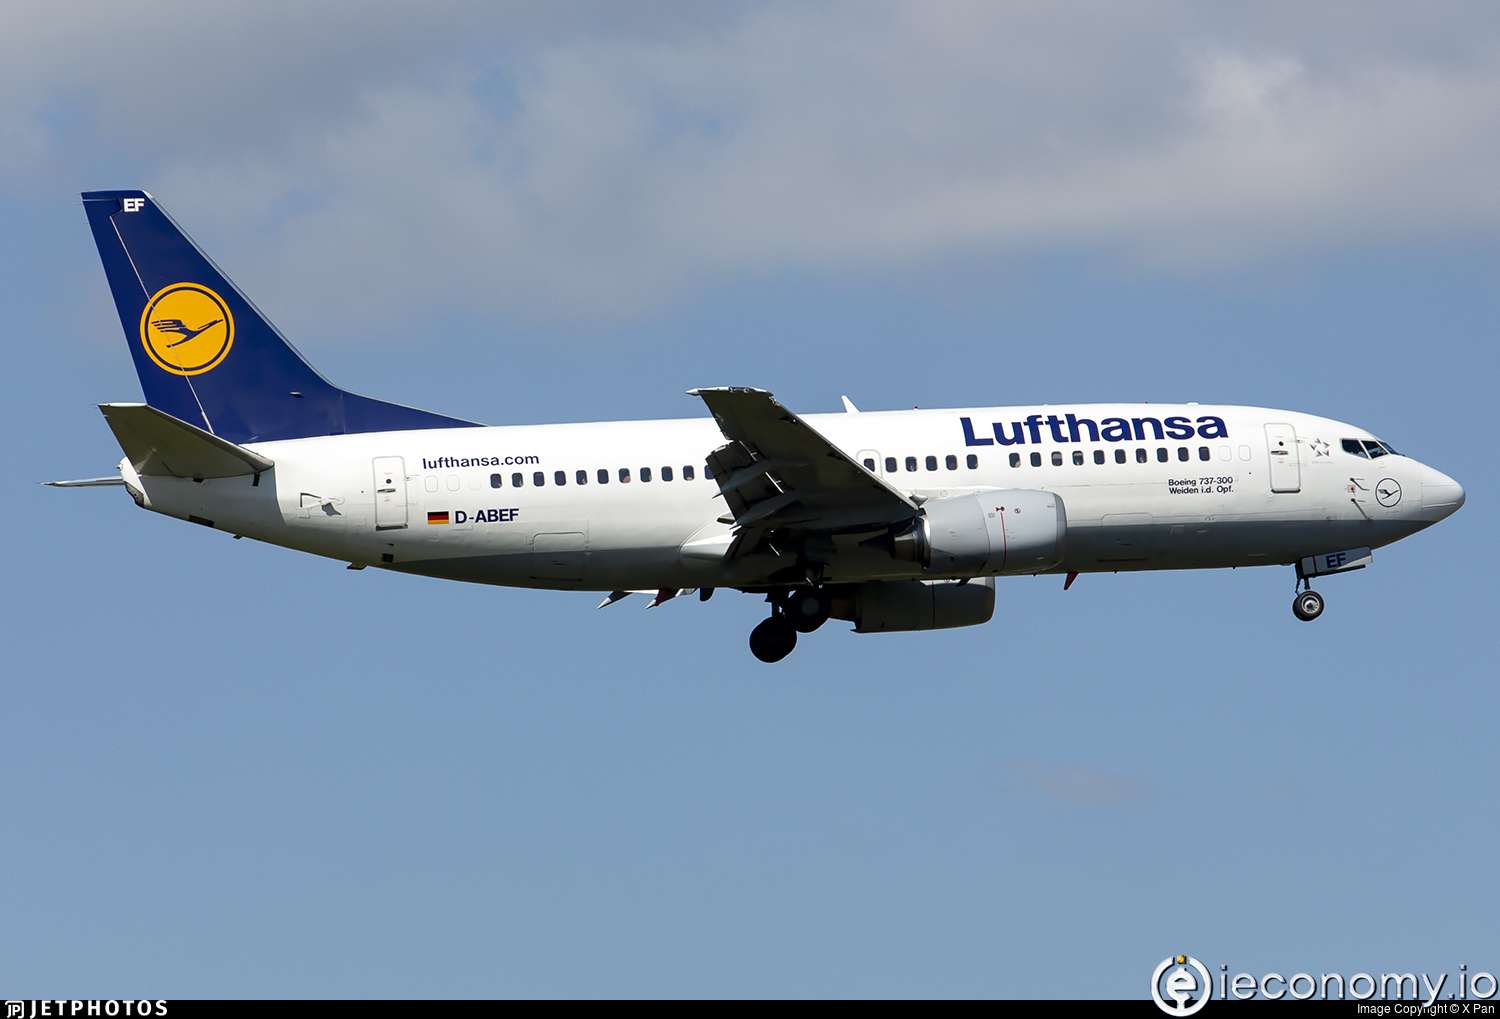 Lufthansa uçuş fiyatlarının düşürülmesine açık